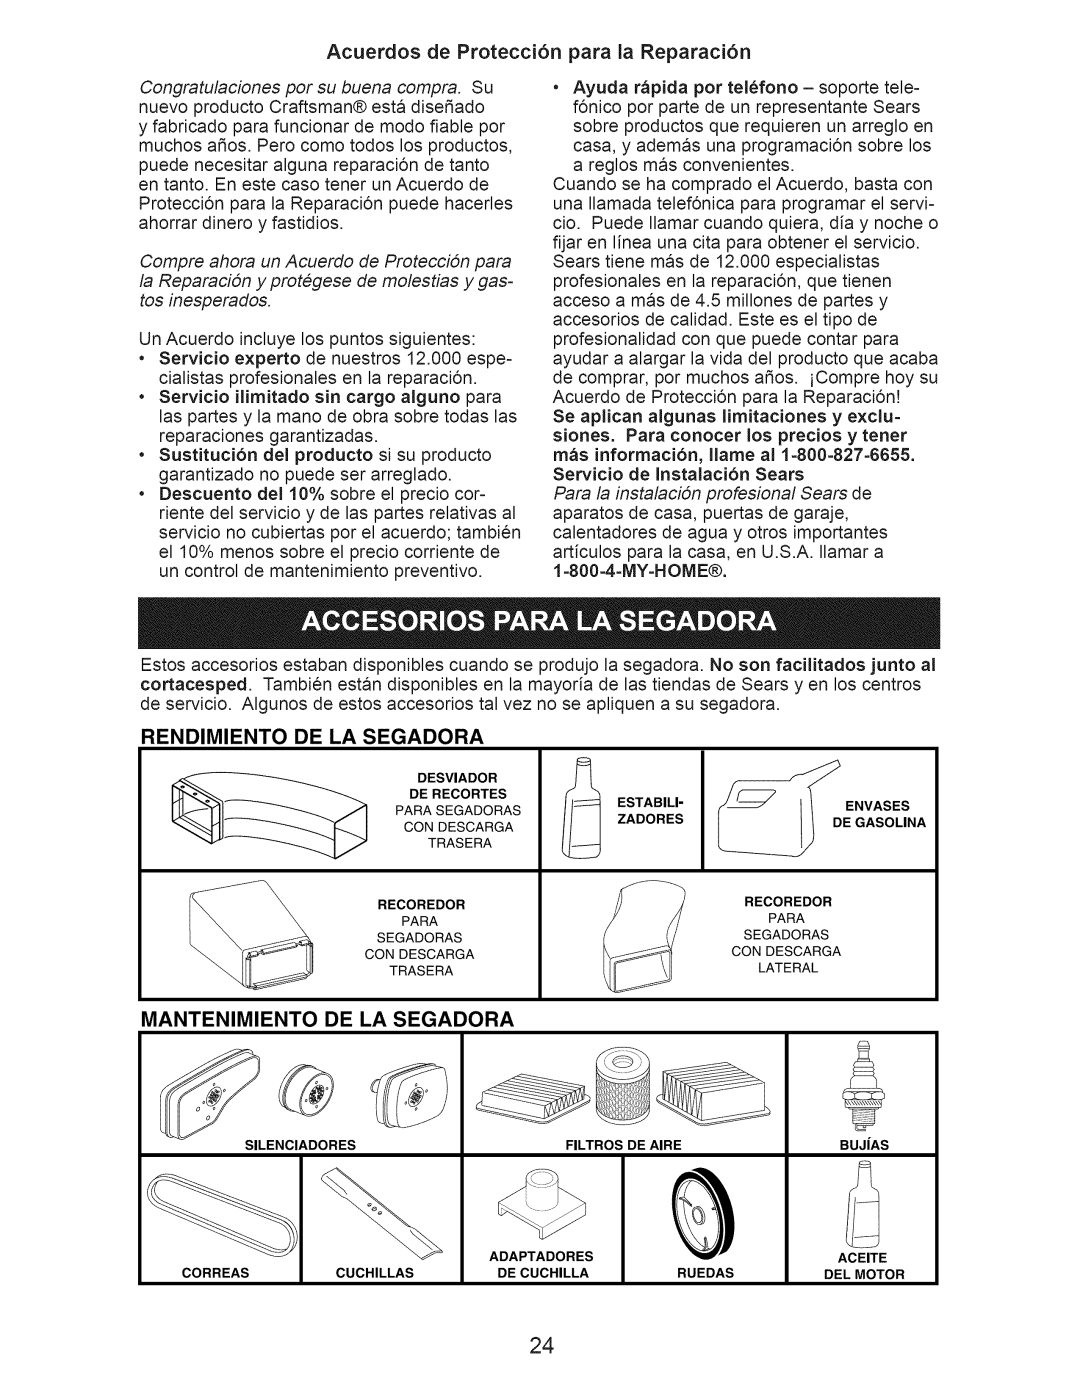 Craftsman 917.376533 Acuerdos de Protecci6n para la Reparaci6n, Rendimiento De La Segadora, Mantenimiento De La Segadora 